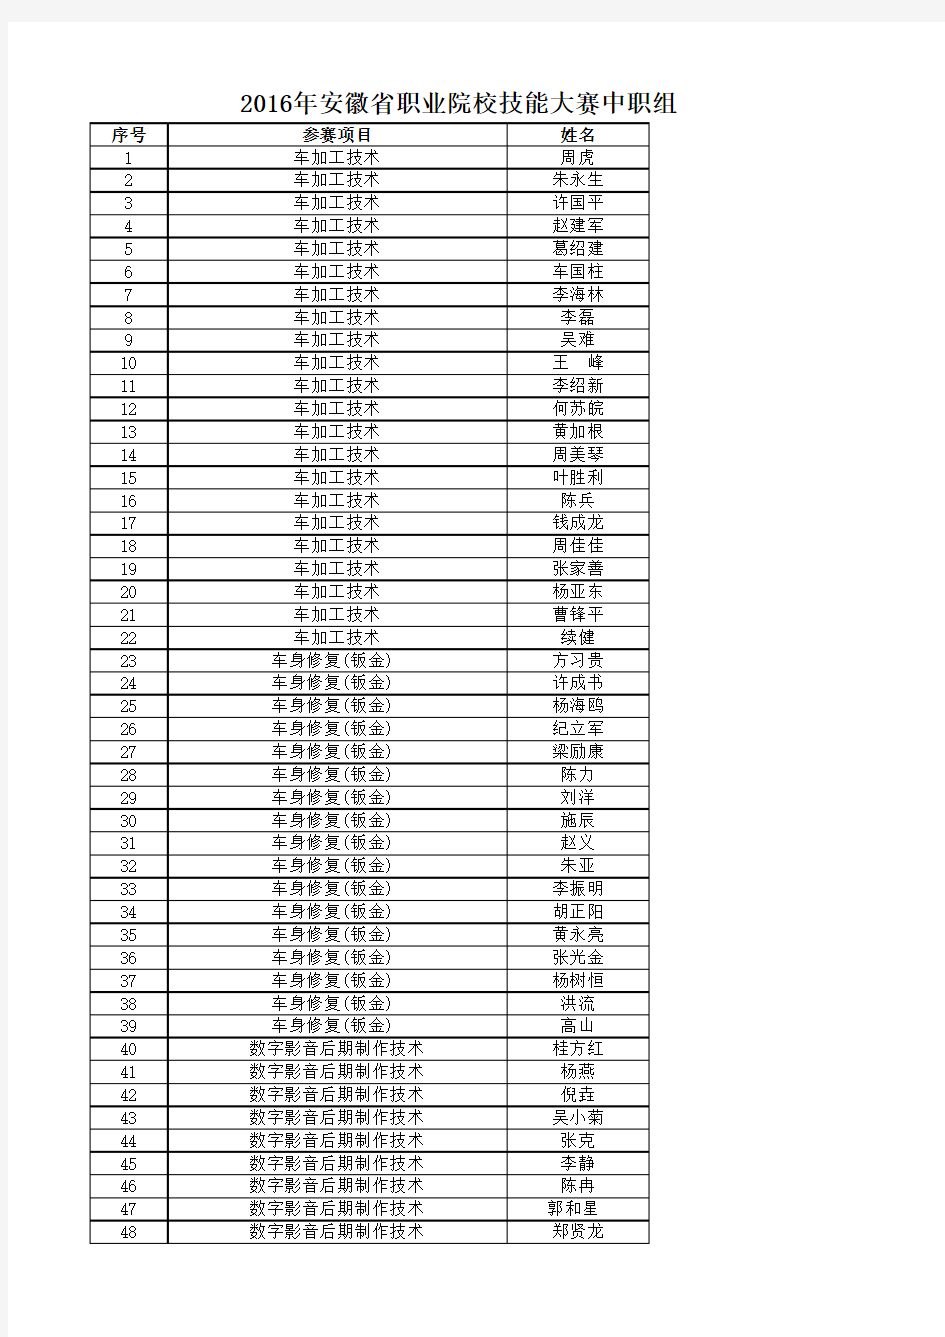 2016年安徽省职业院校技能大赛中职组参赛选手公示名单